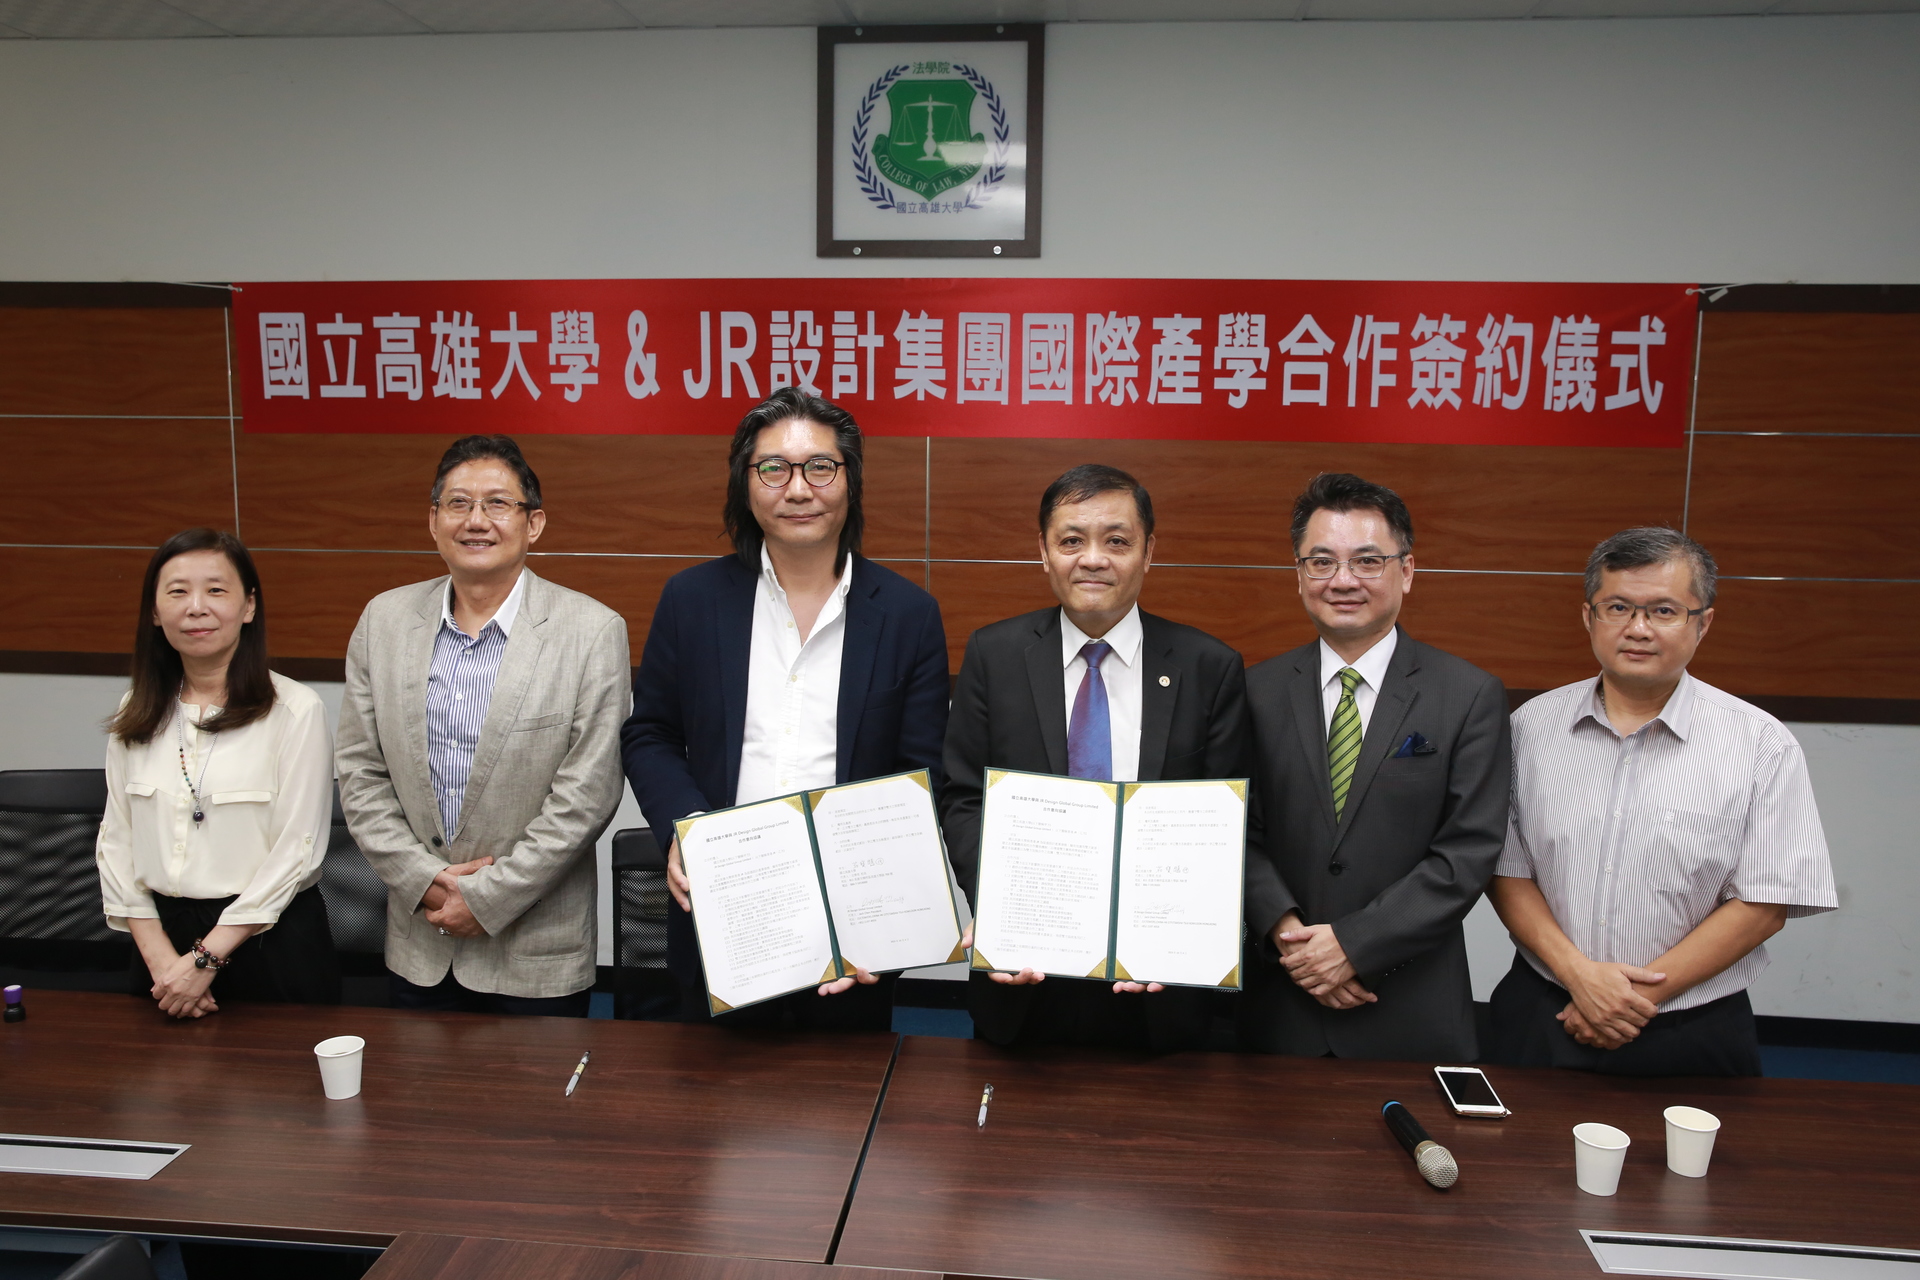 高雄大學 香港JR集團 簽署國際產學研合作